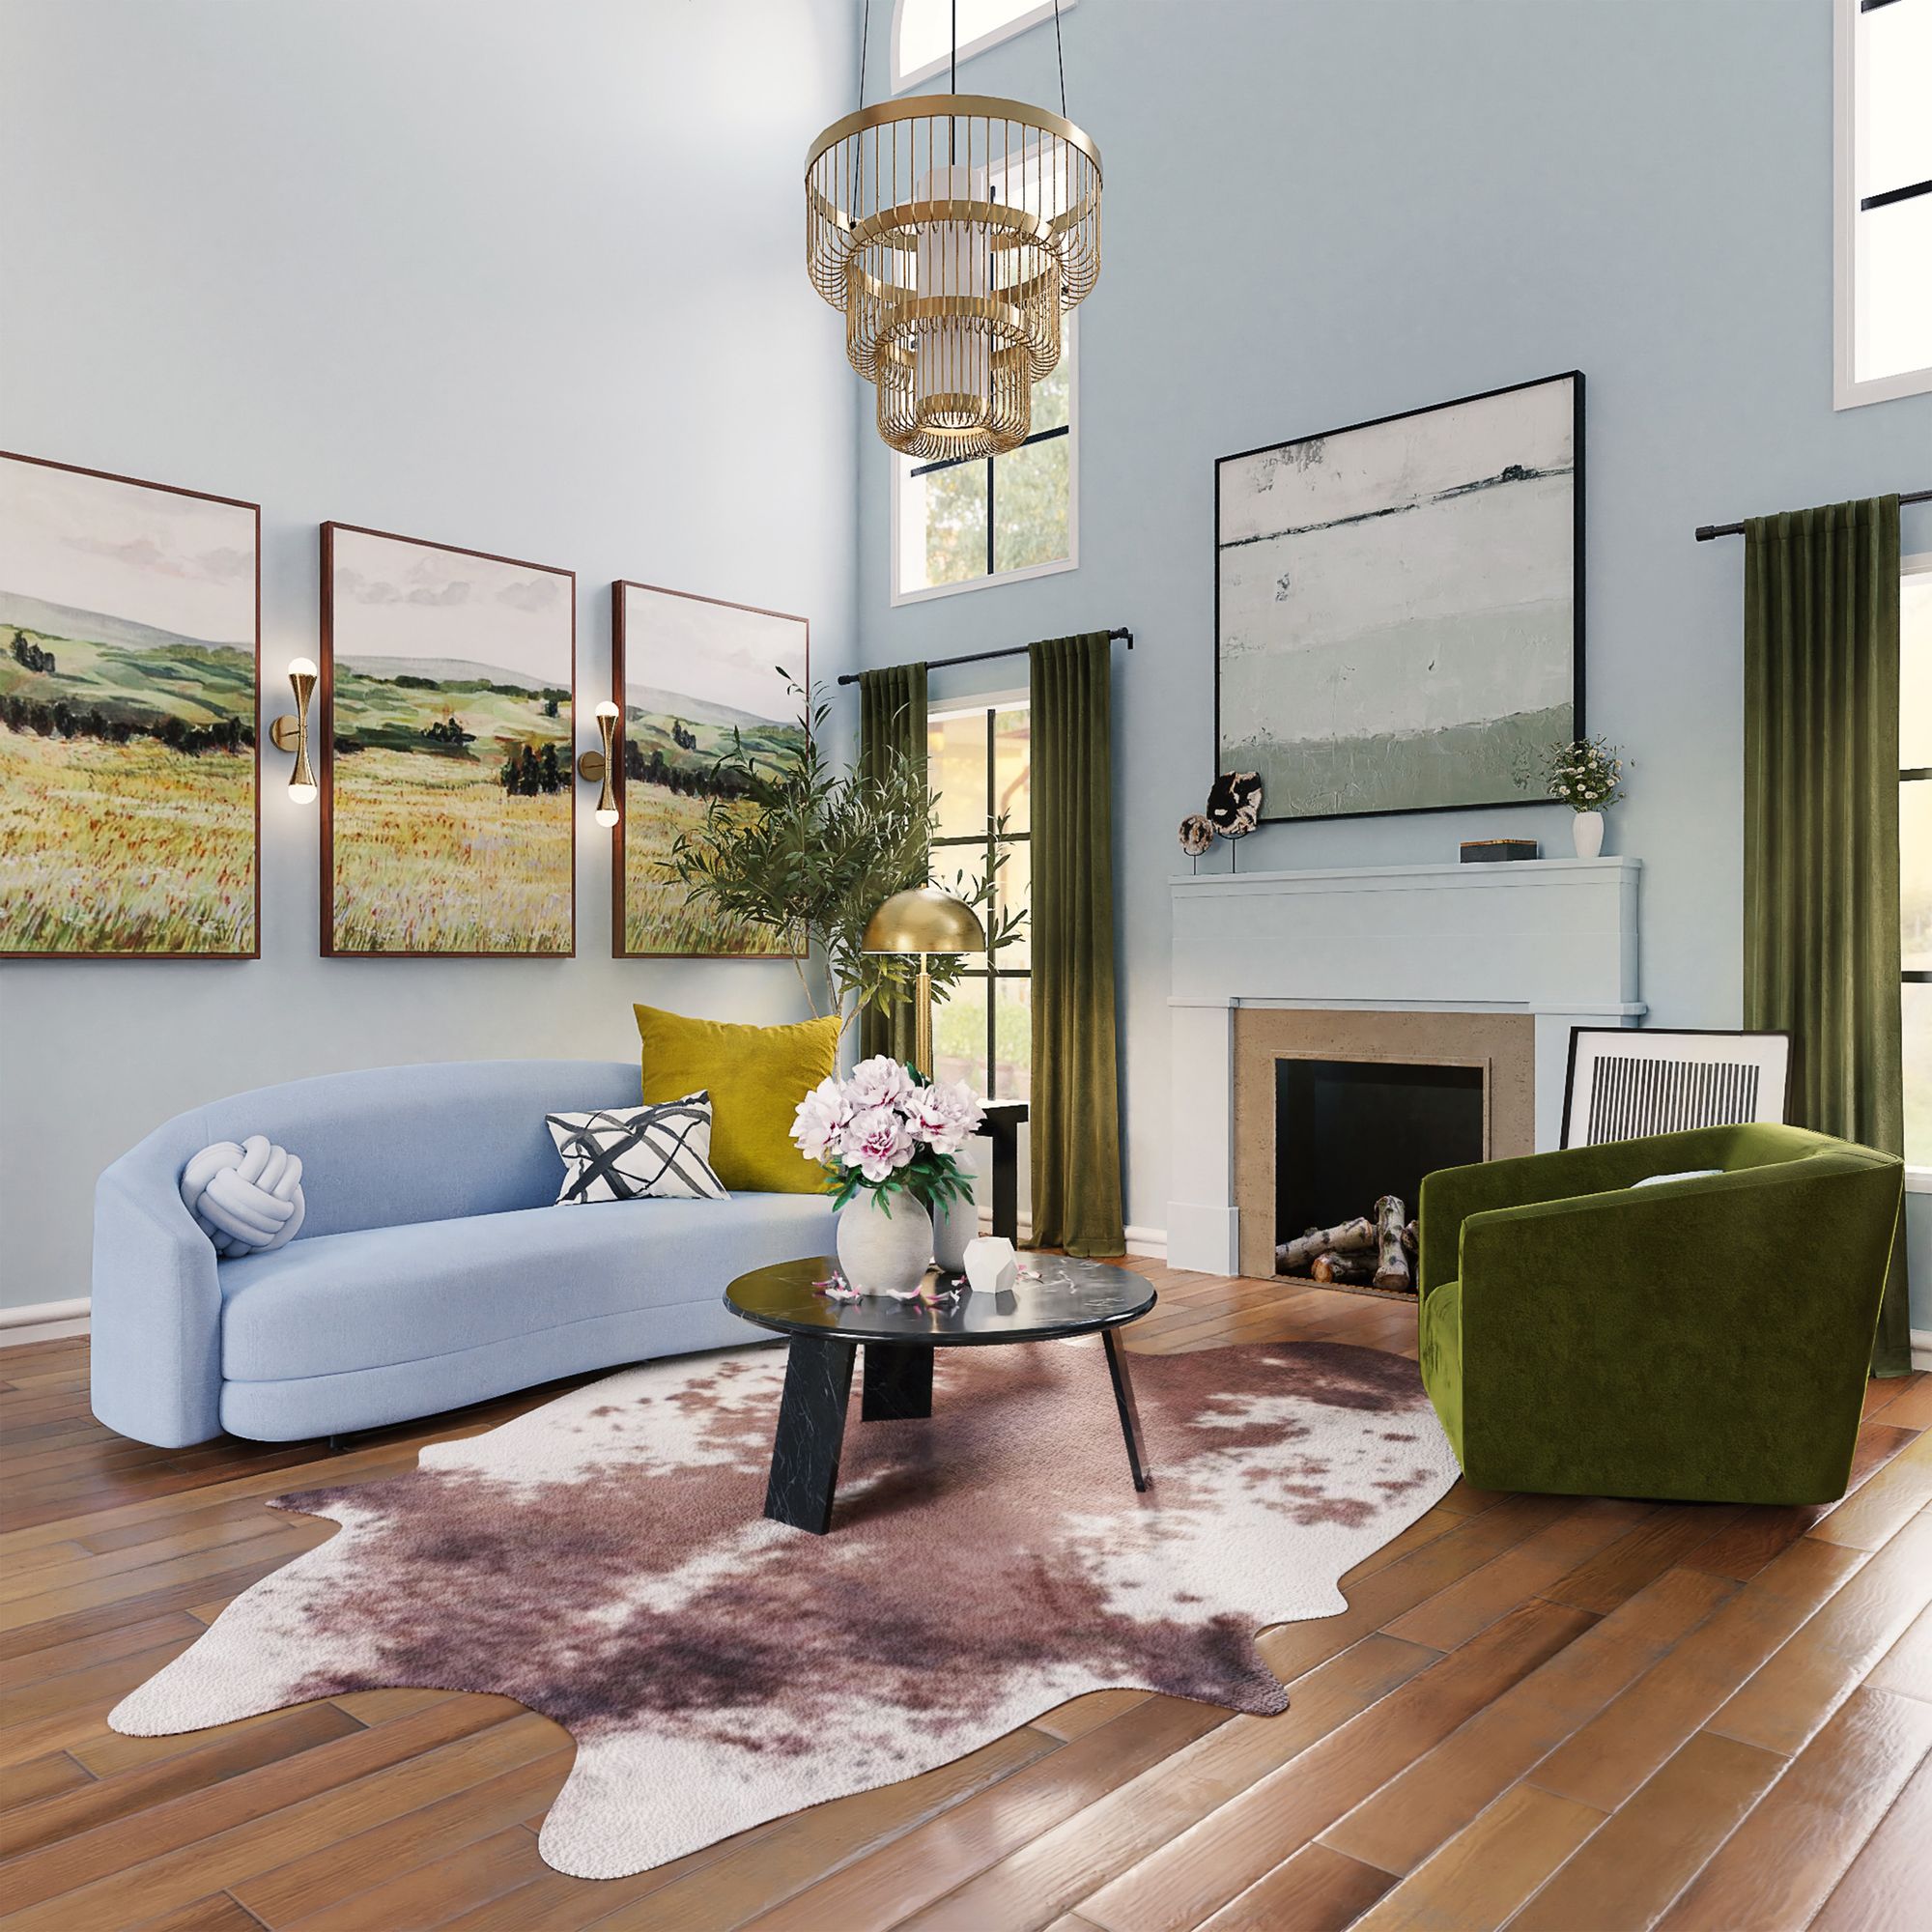 sala de estar maximalista de diseño con muebles de colores